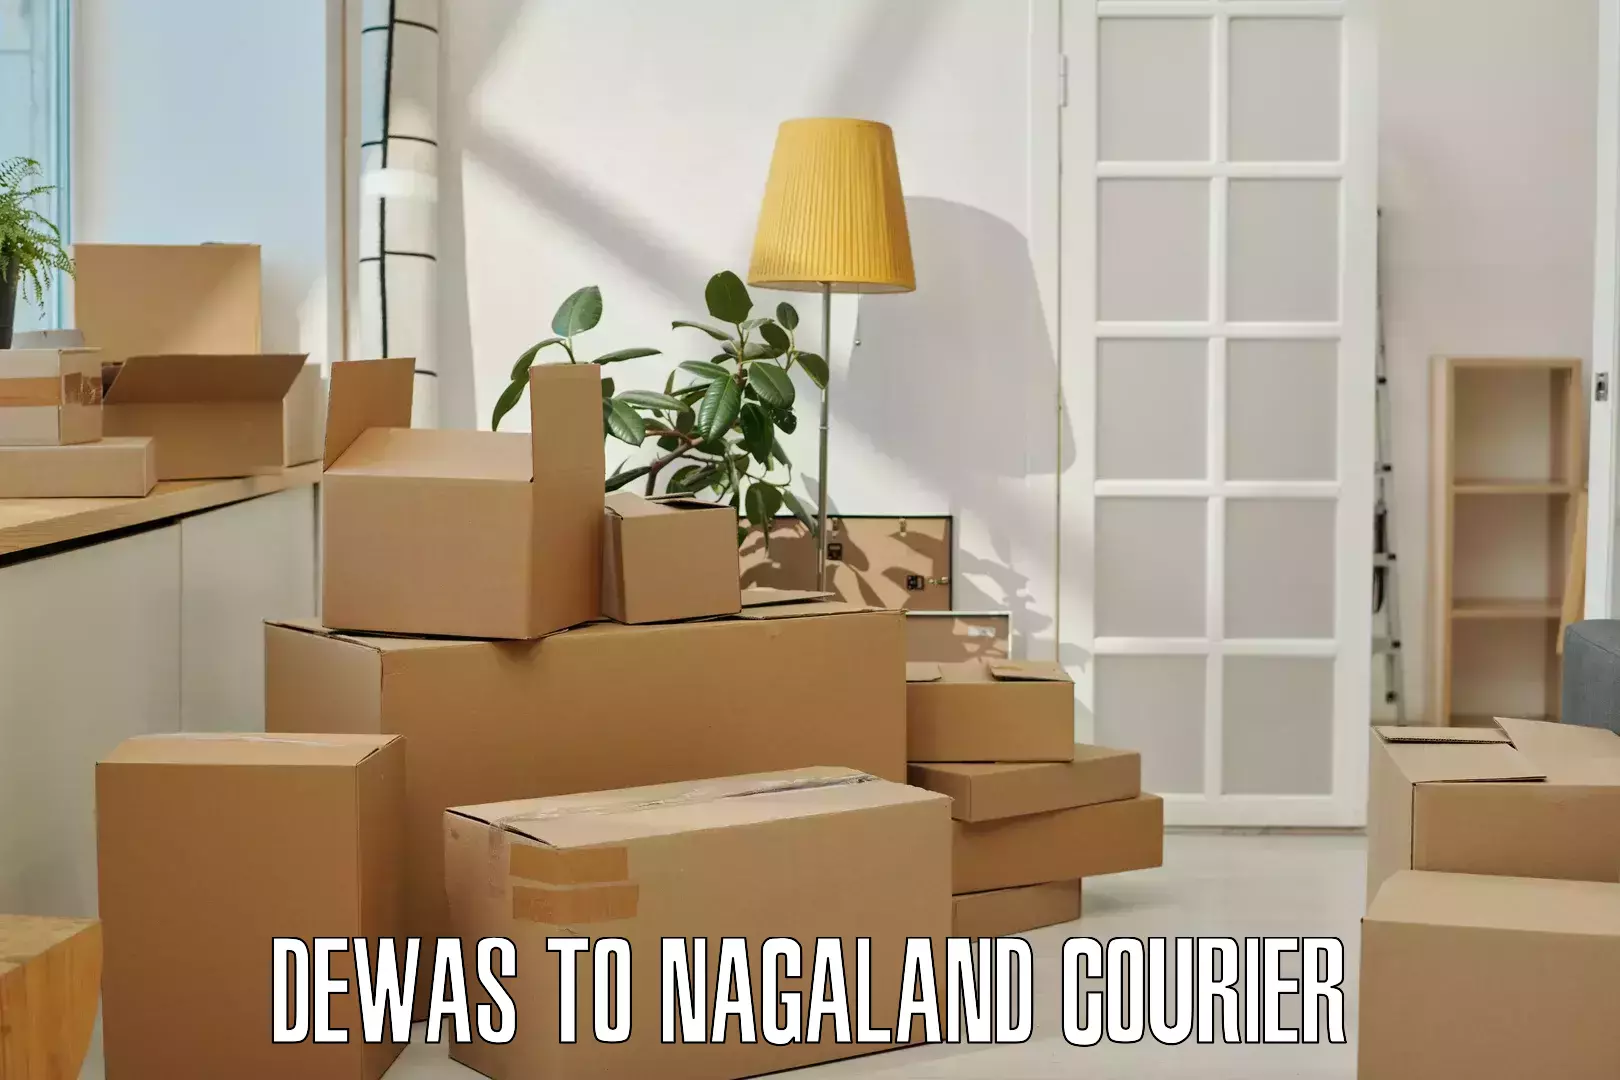 Digital courier platforms Dewas to Nagaland